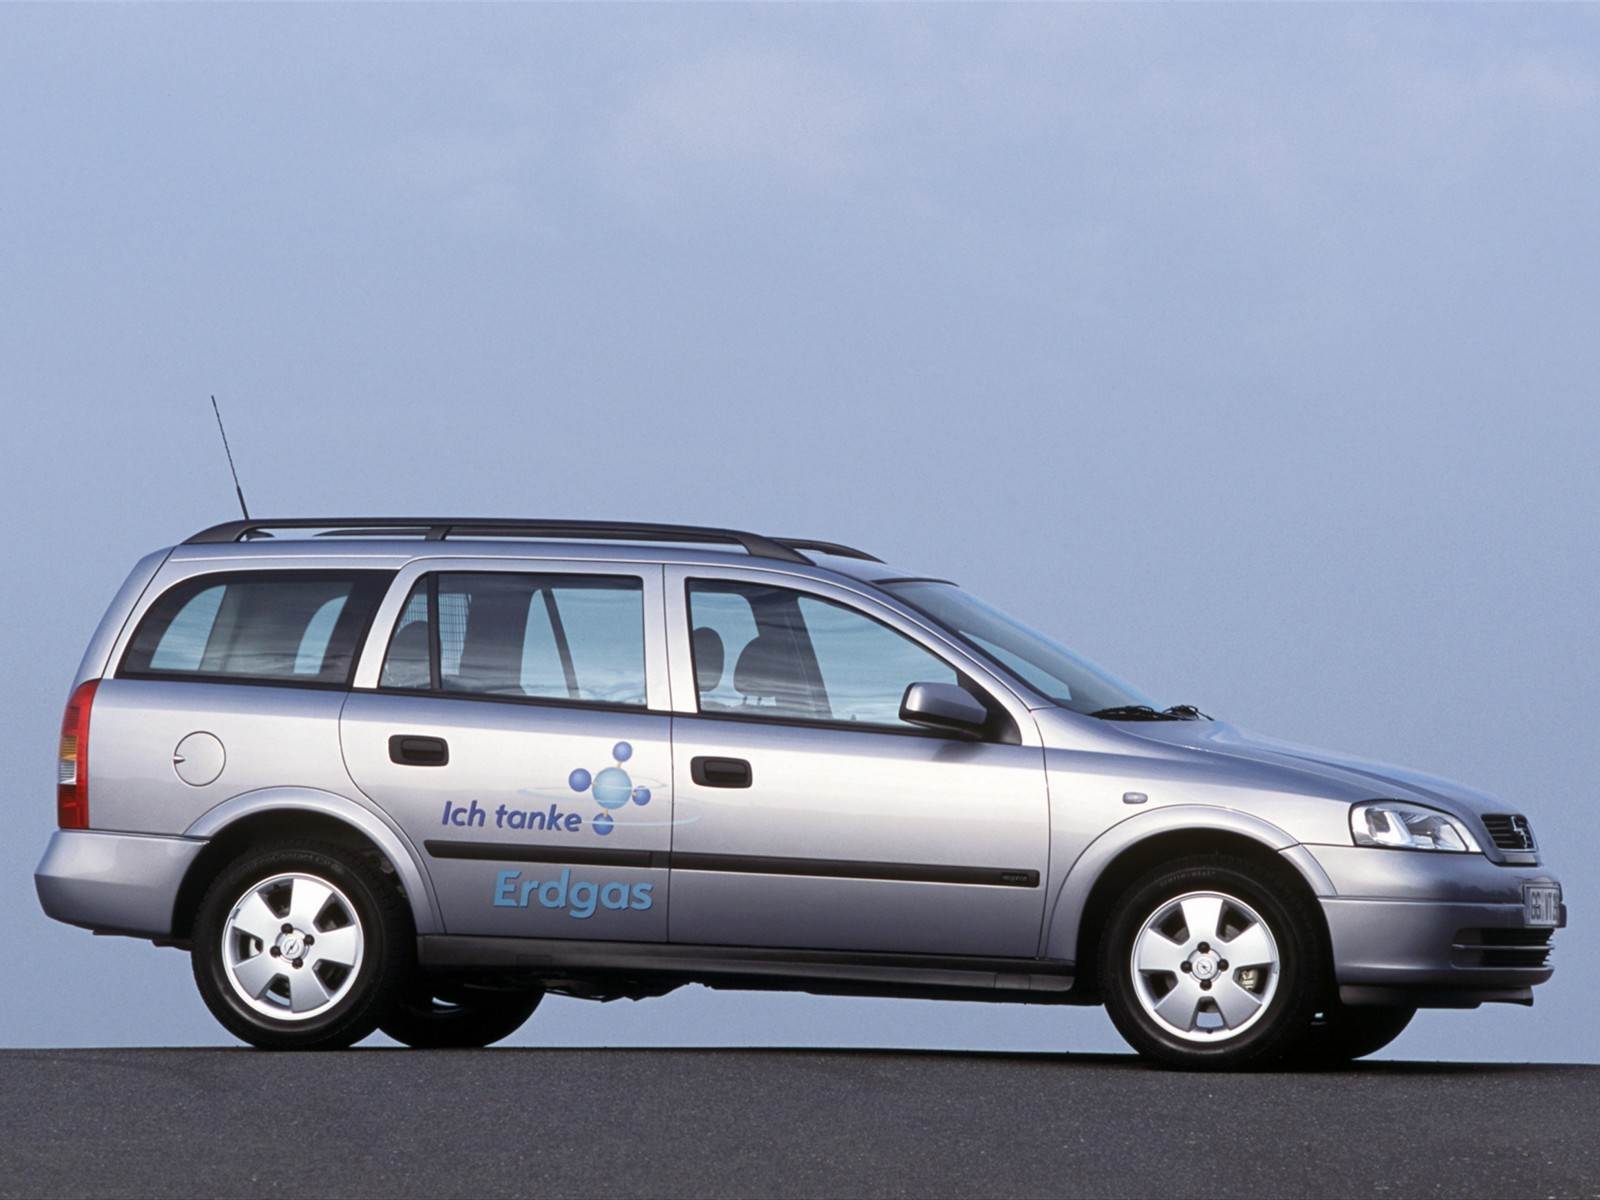 Джи караван. Opel Astra универсал 1998. Opel Astra g Caravan. Opel Astra g универсал.